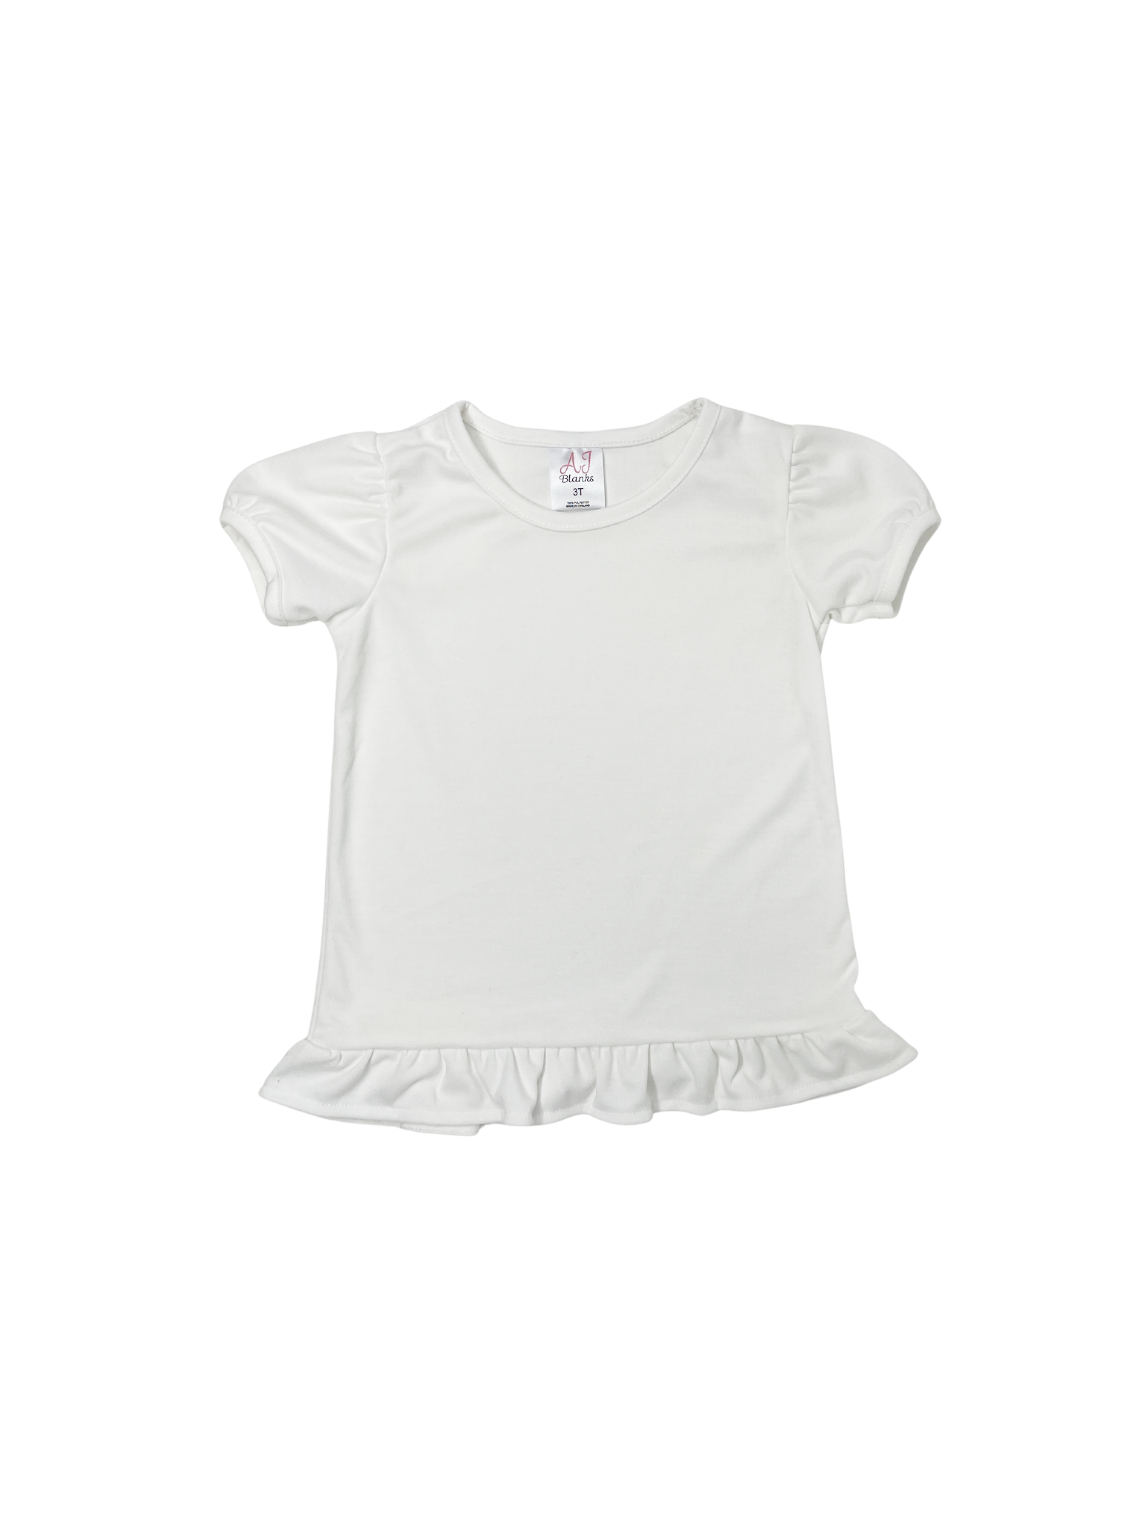 Girl's Sublimation Ruffle Short Sleeve Shirt 8